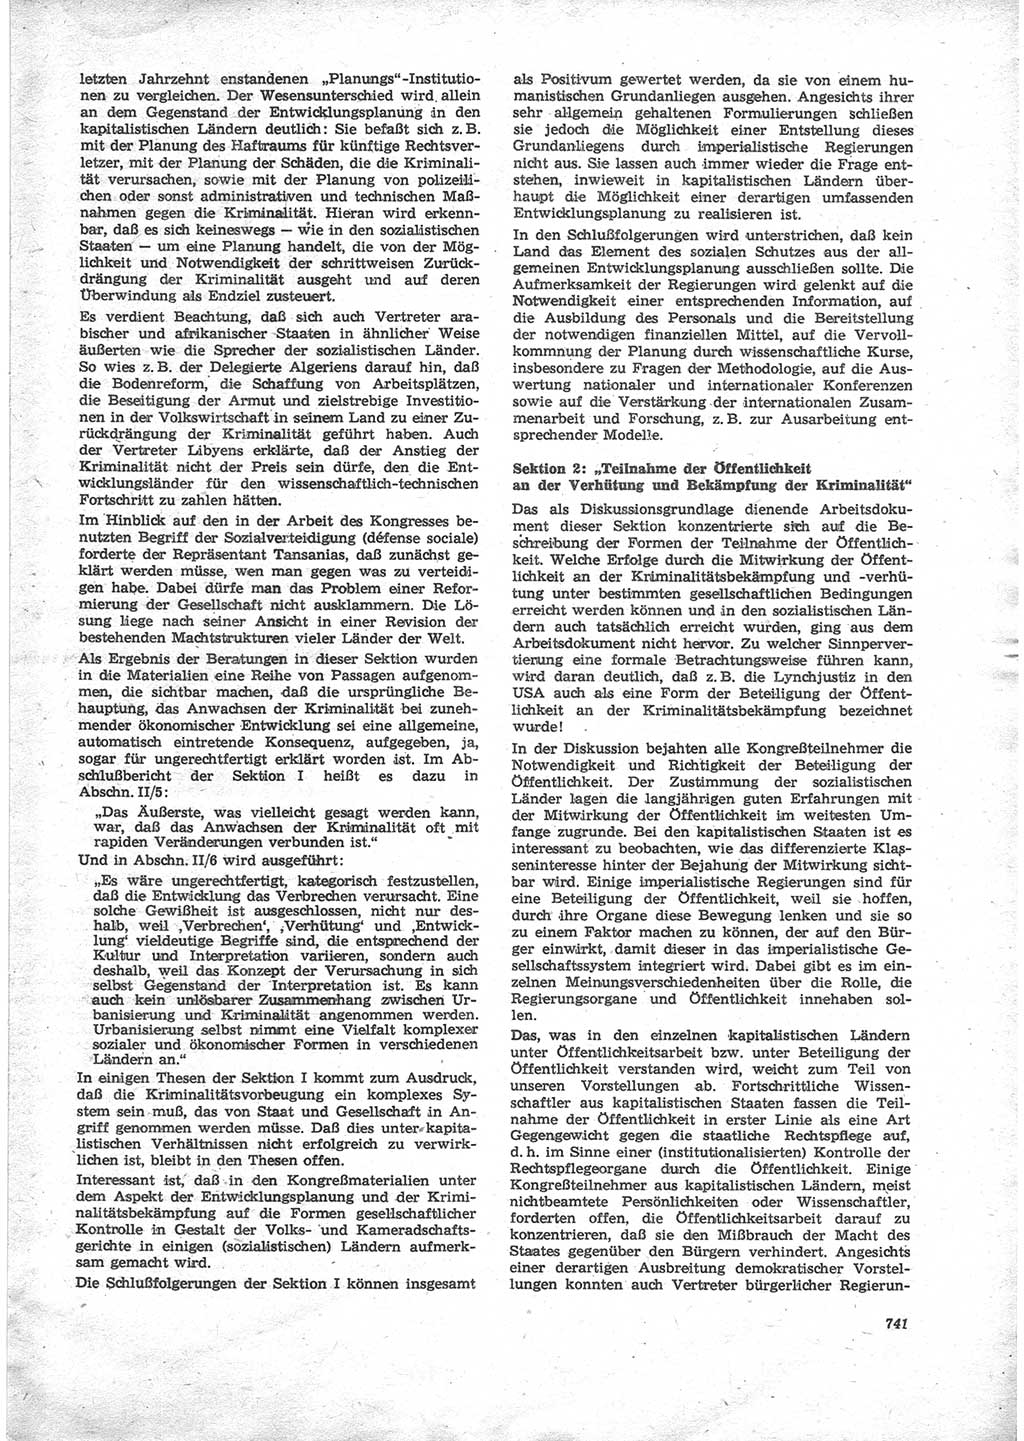 Neue Justiz (NJ), Zeitschrift für Recht und Rechtswissenschaft [Deutsche Demokratische Republik (DDR)], 24. Jahrgang 1970, Seite 741 (NJ DDR 1970, S. 741)